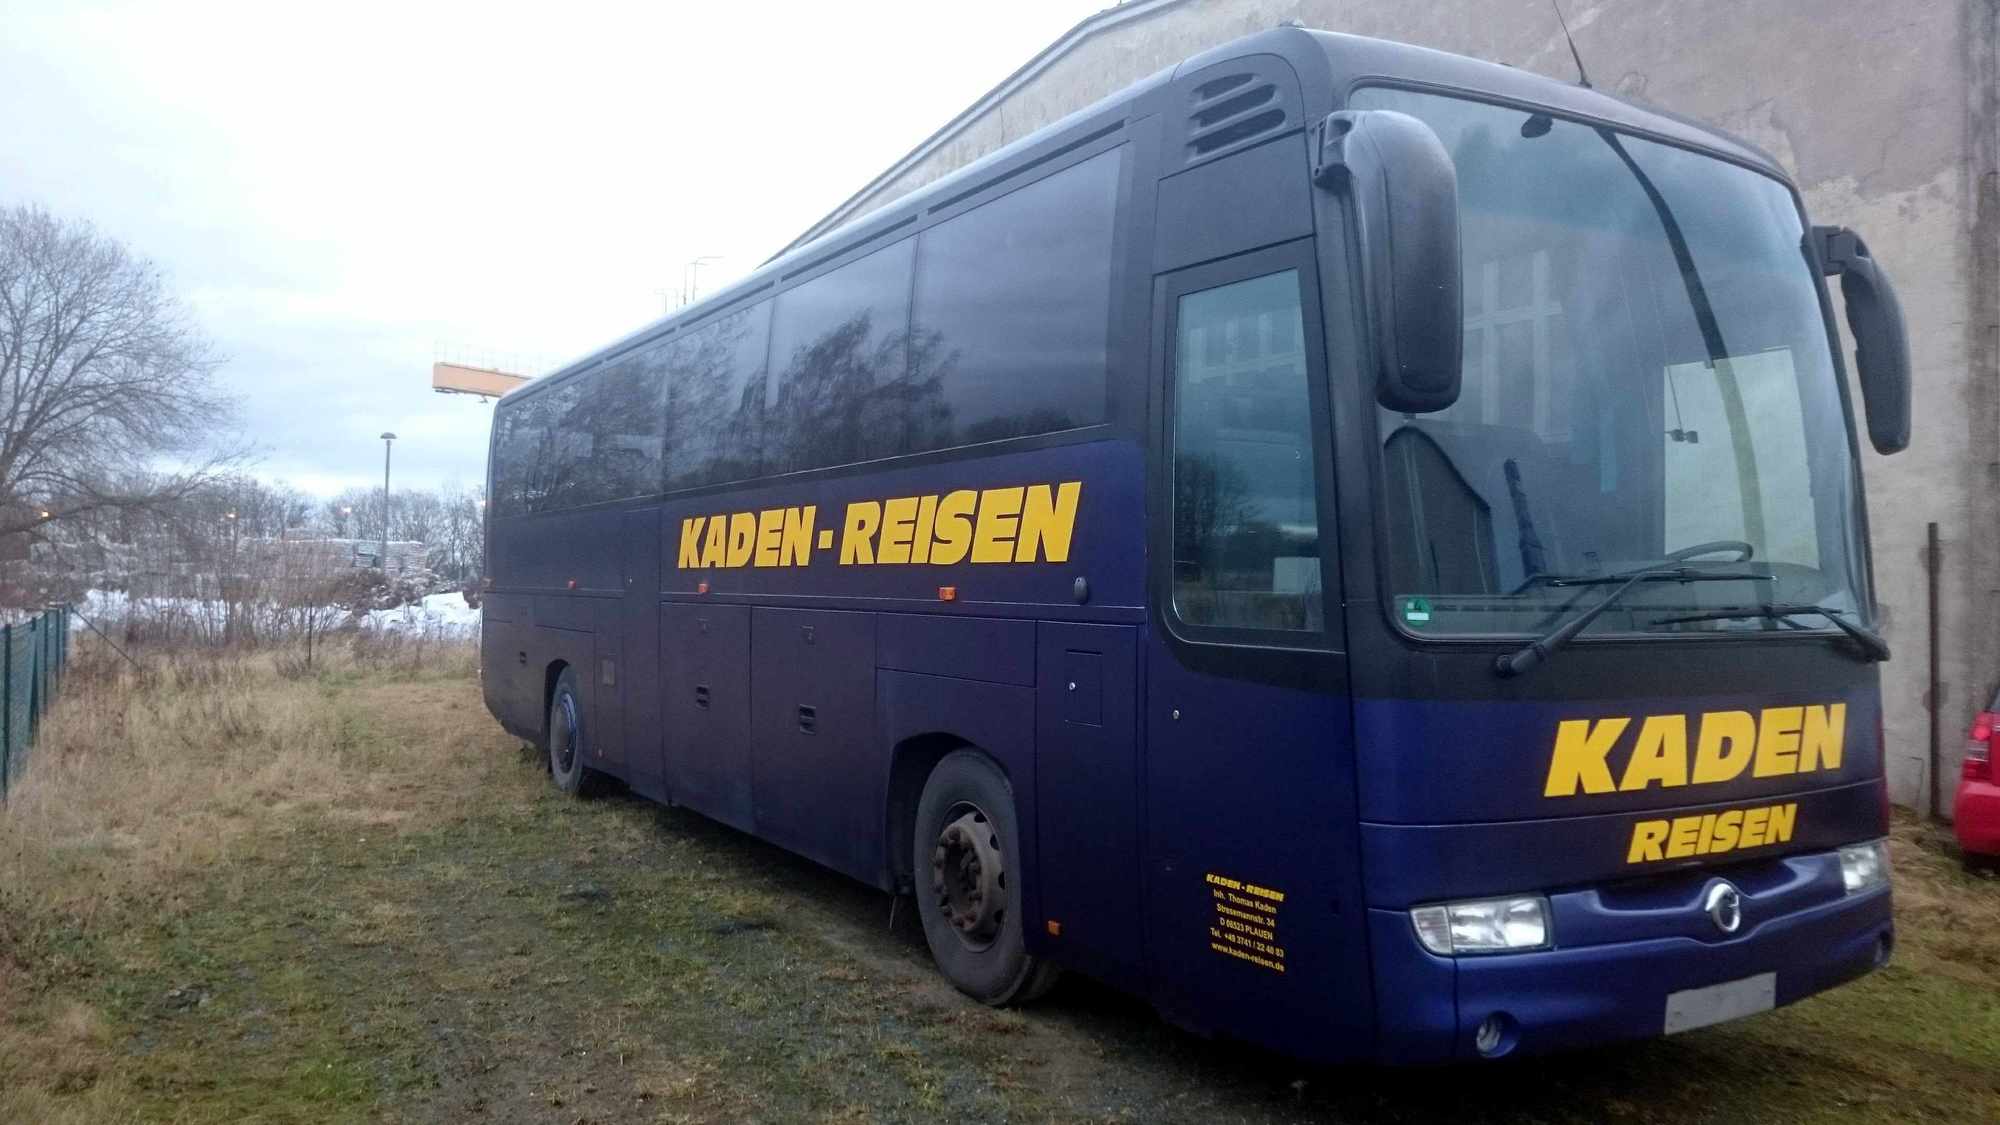 Kaden-Reisen undefined: picture 1